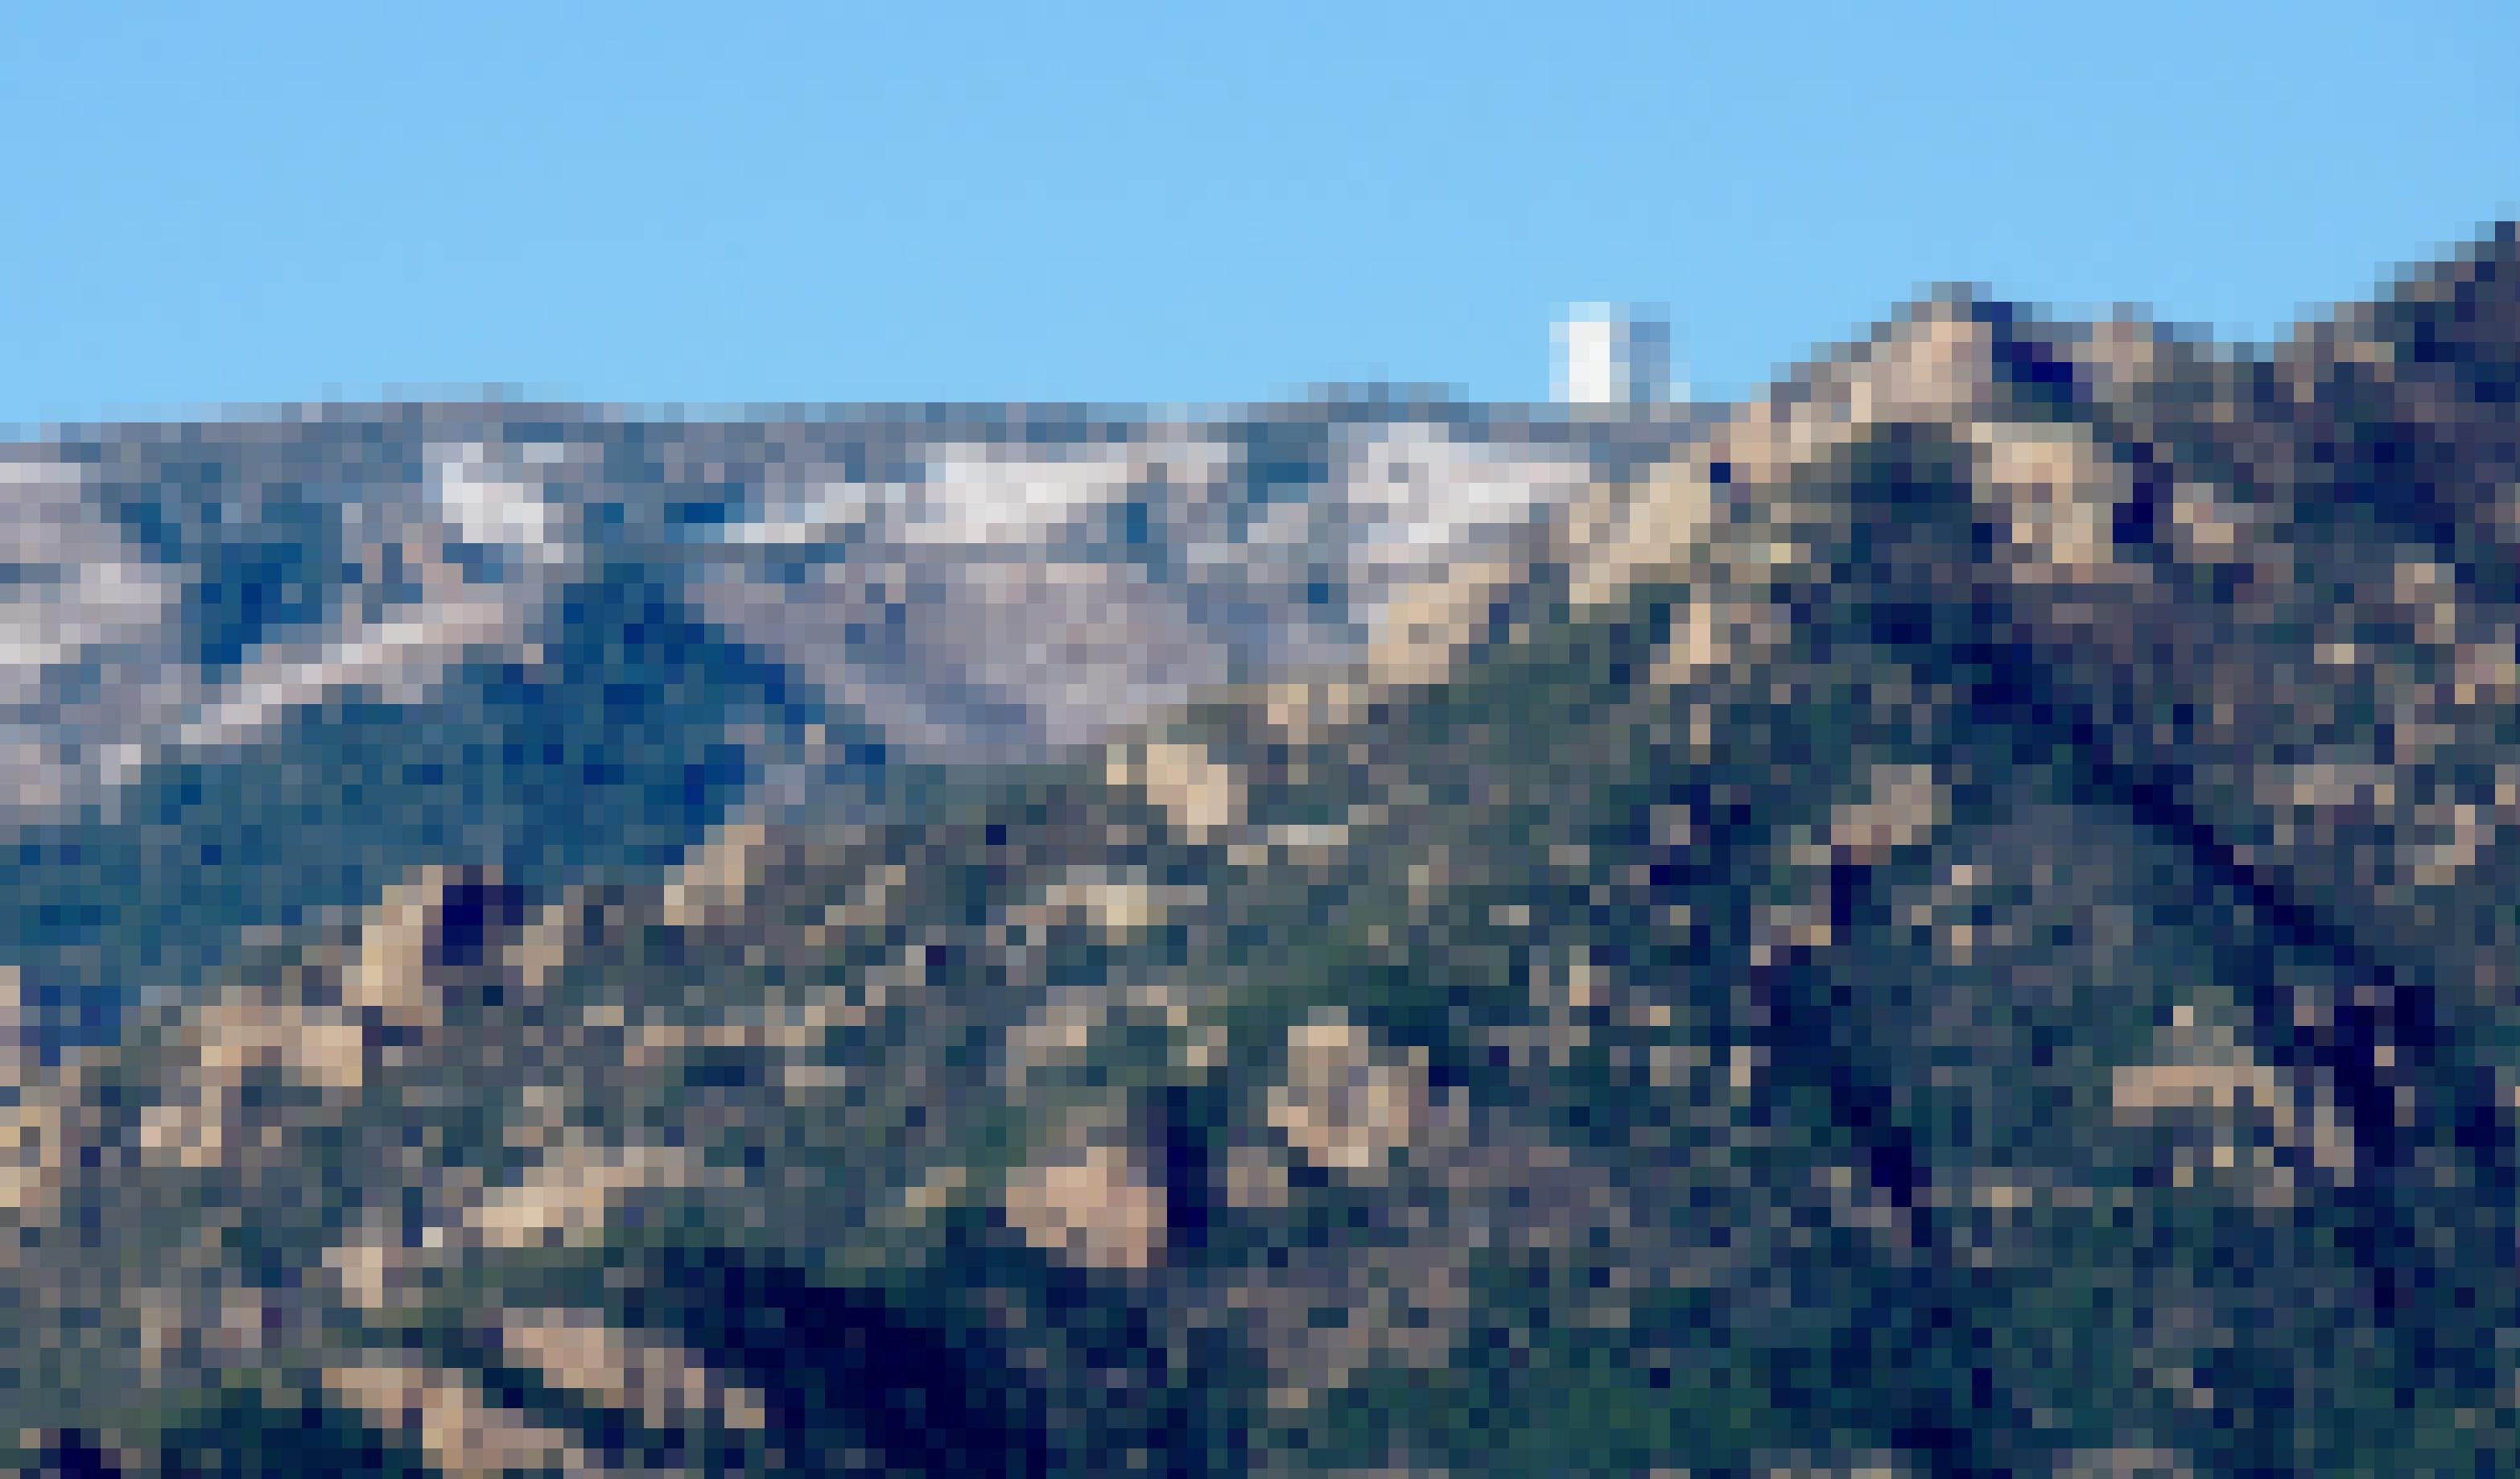 Ein teilweise begrünter Berggipfel, auf dem ein kastenförmiges Teleskopgebäude erkennbar ist.